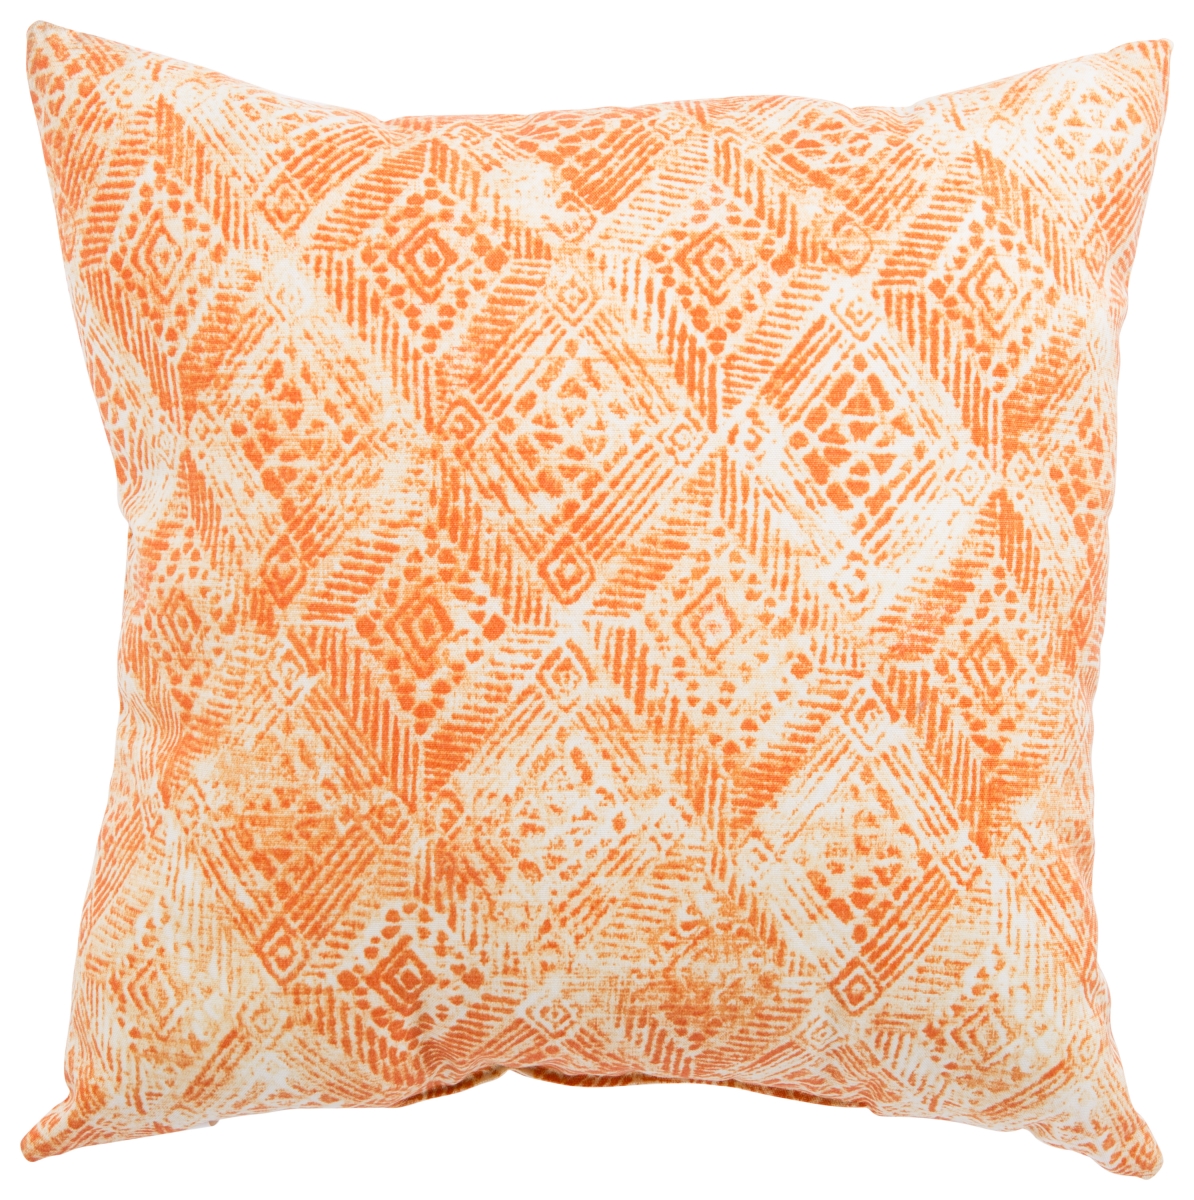 Plp100079 20 X 20 In. Veranda Darrow Fresco Orange & White Ikat Indoor & Outdoor Throw Pillow